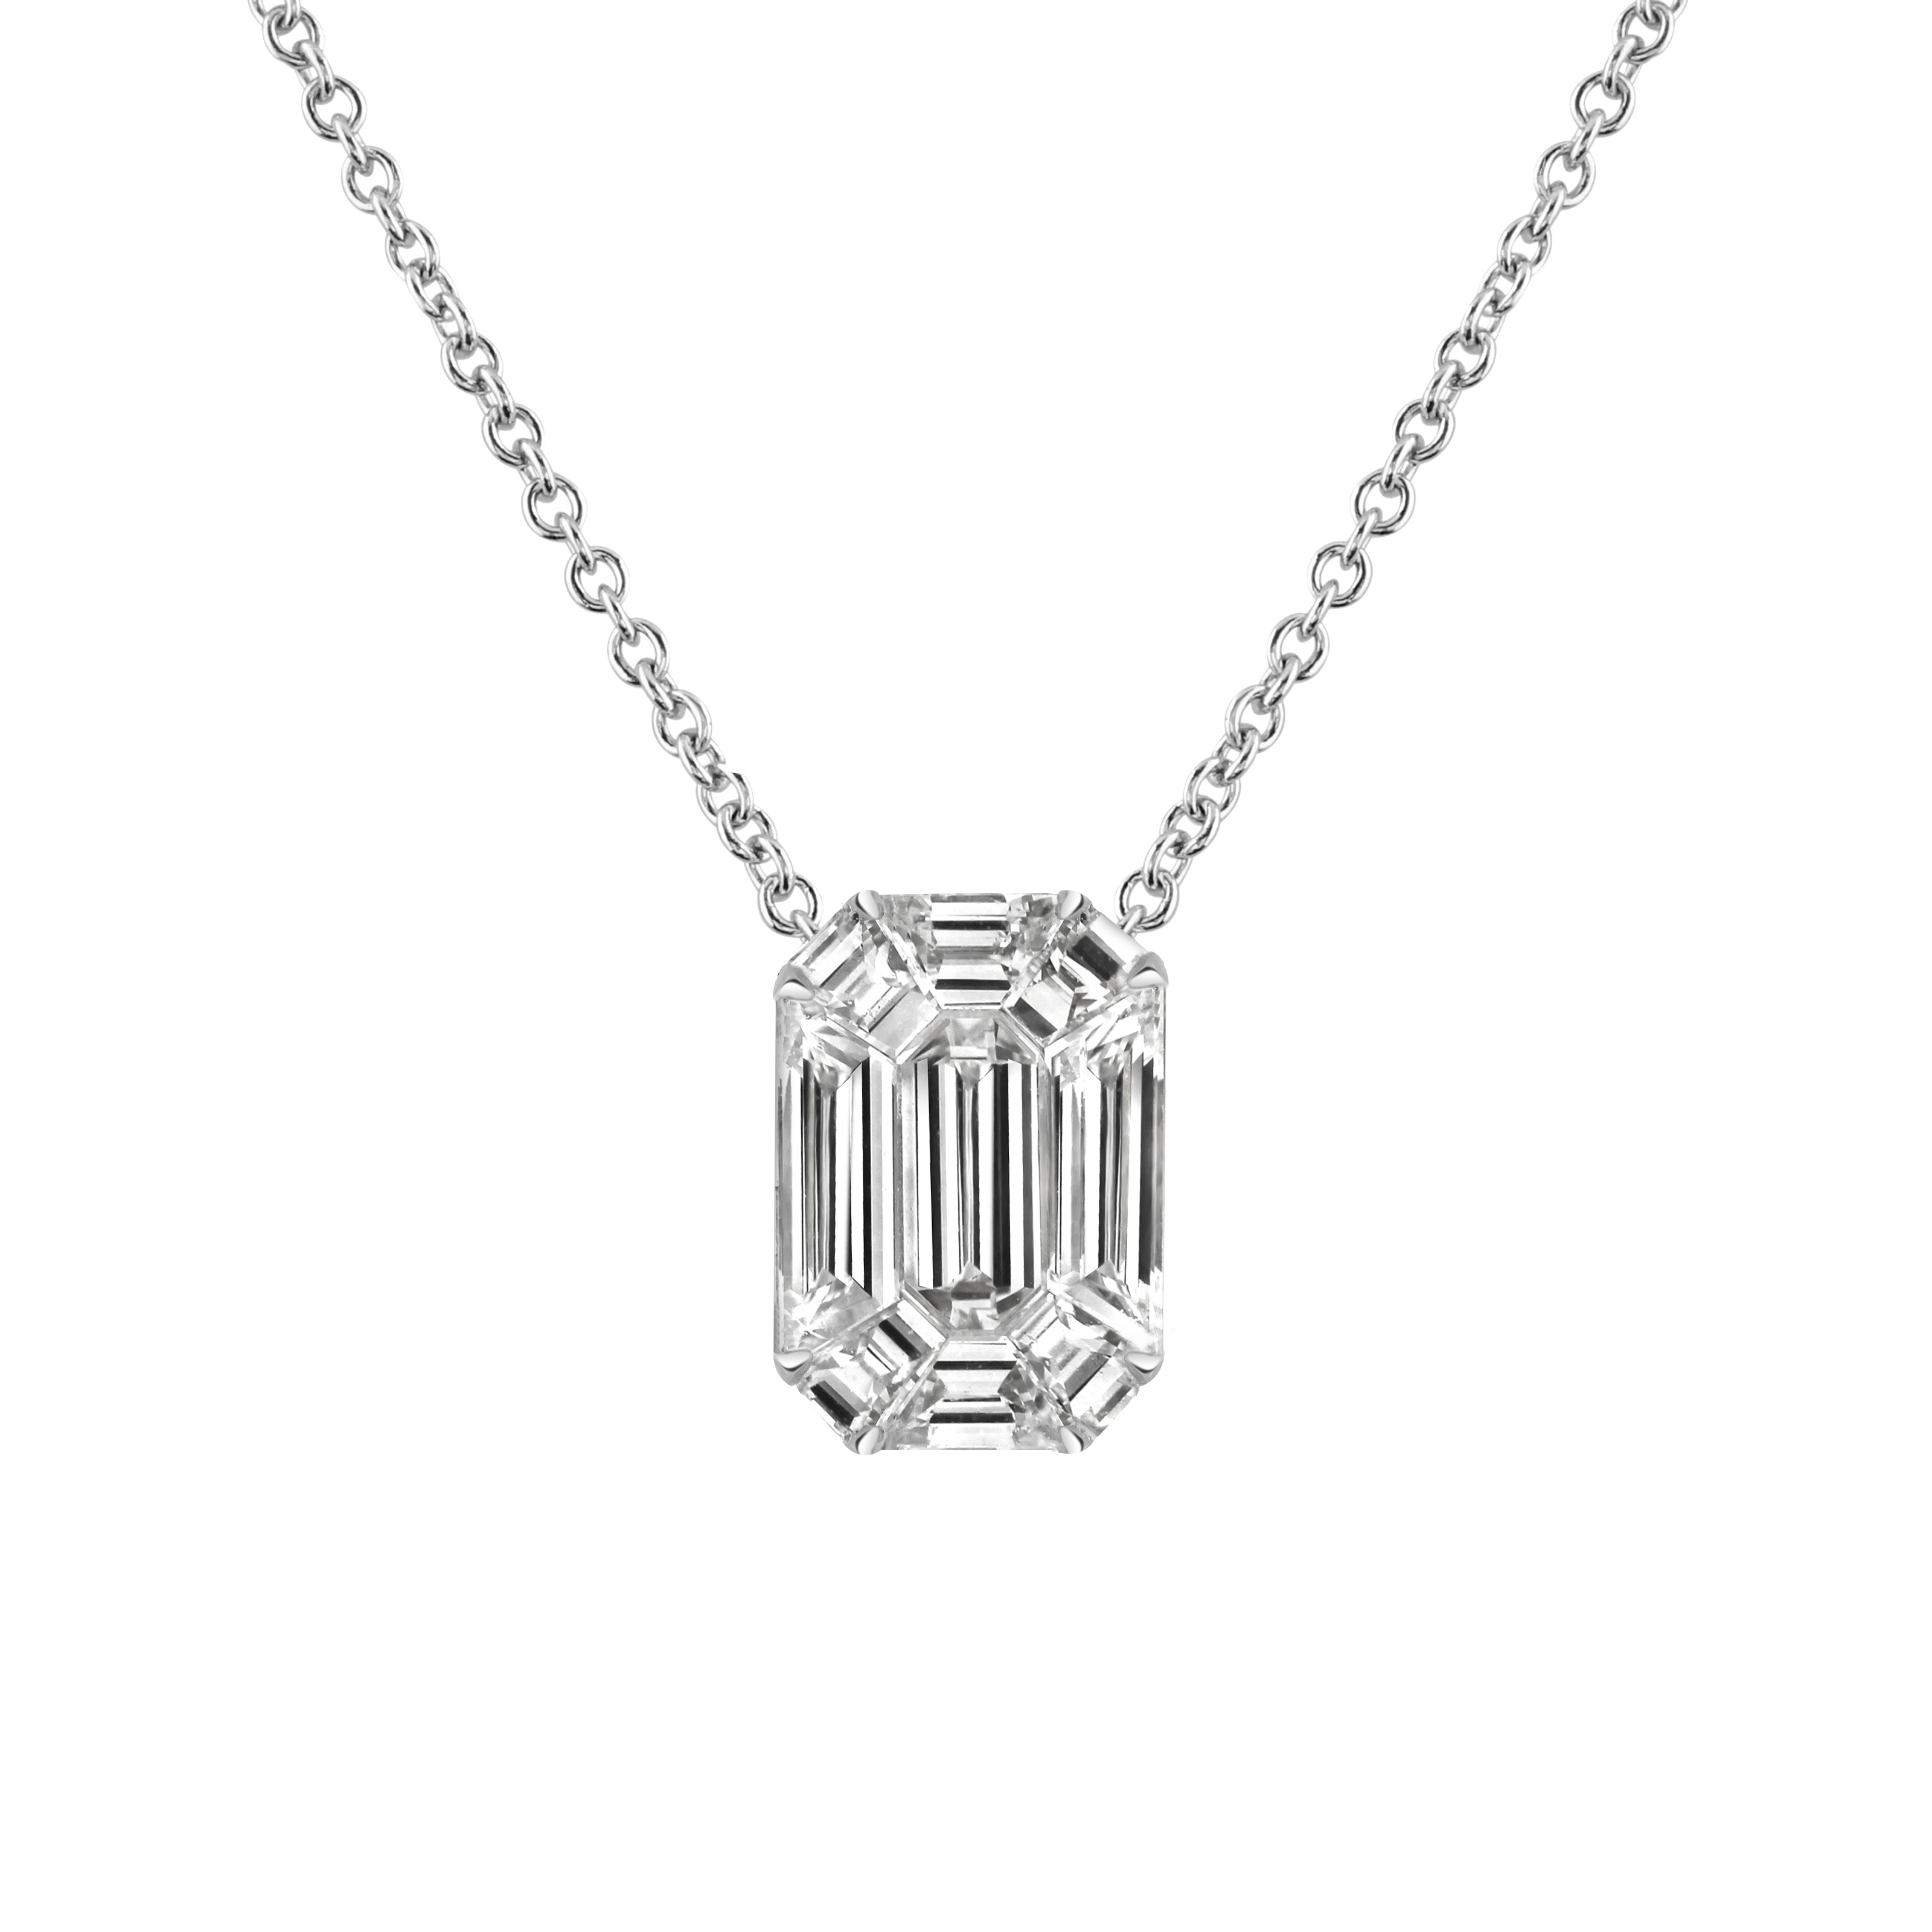 Emerald Cut Diamond Pendant 0.50 ct. tw. (E-F, VS1-VS2) in 14k